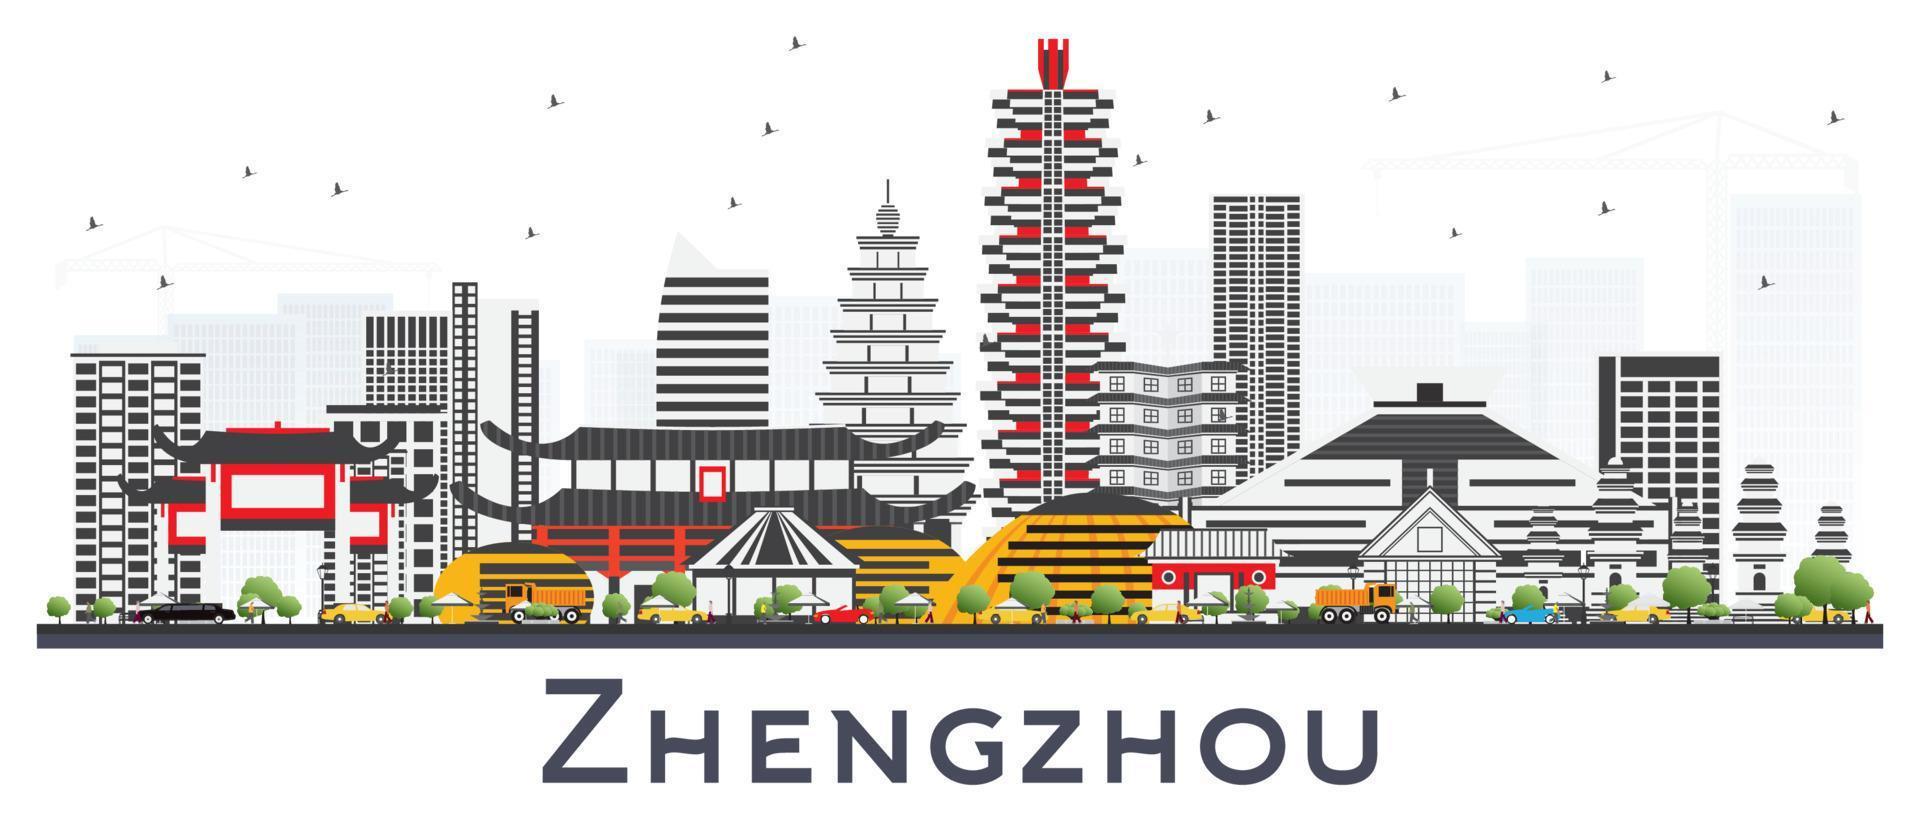 zhengzhou china city skyline mit grauen gebäuden isoliert auf weiß. vektor